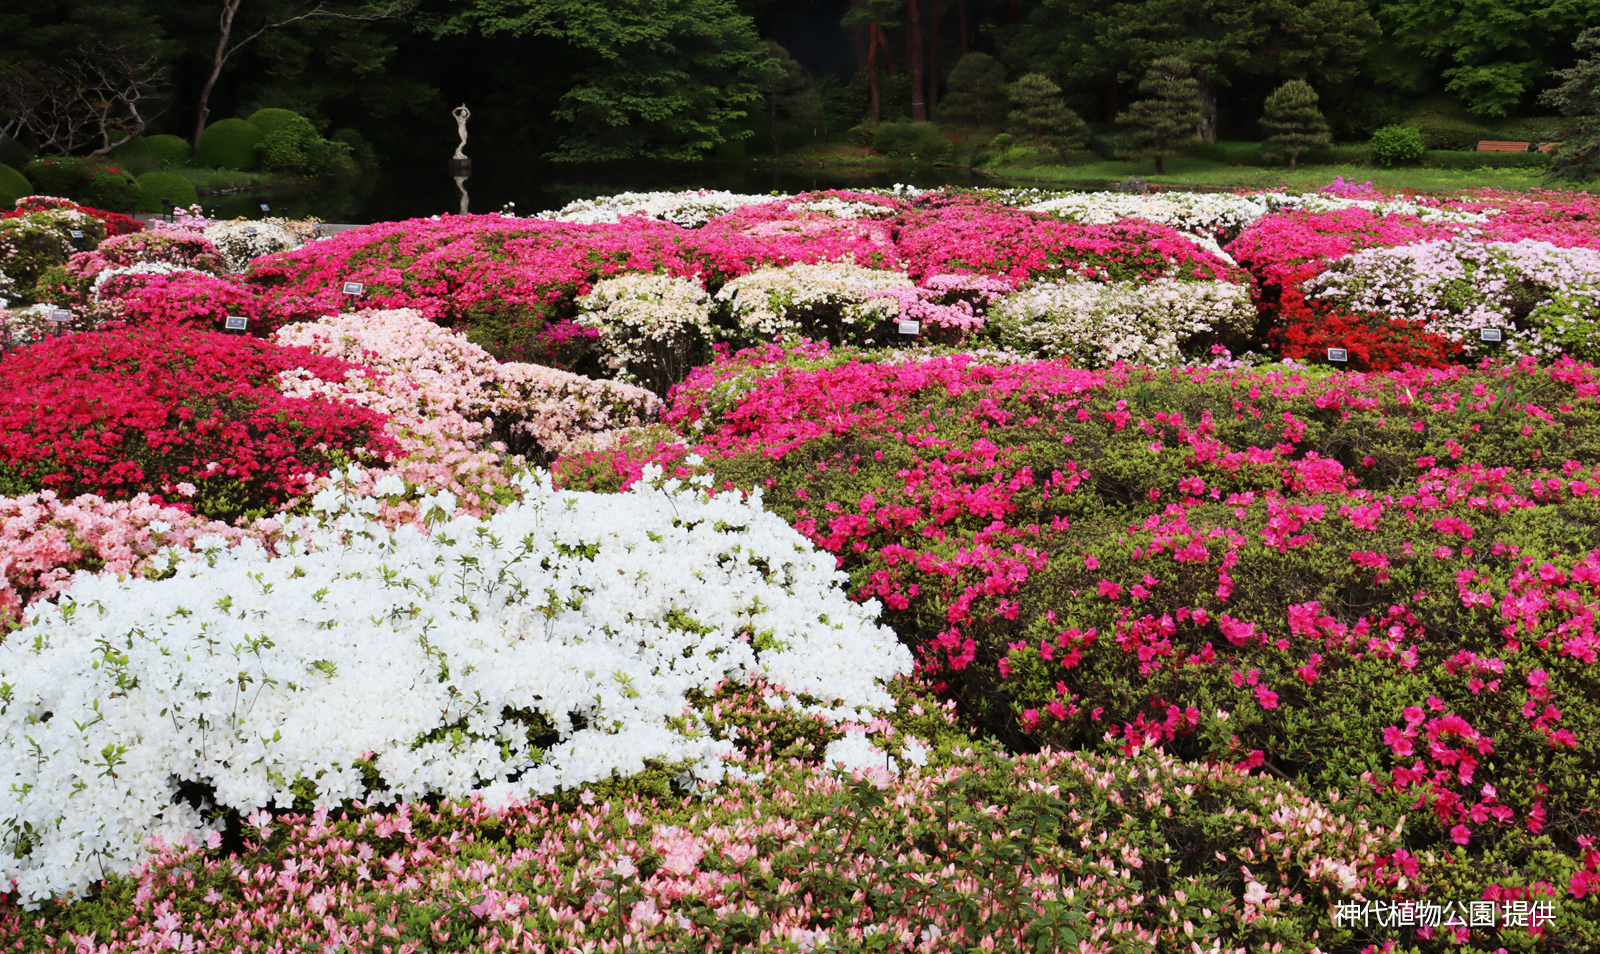 Jindai Botanical Gardens,